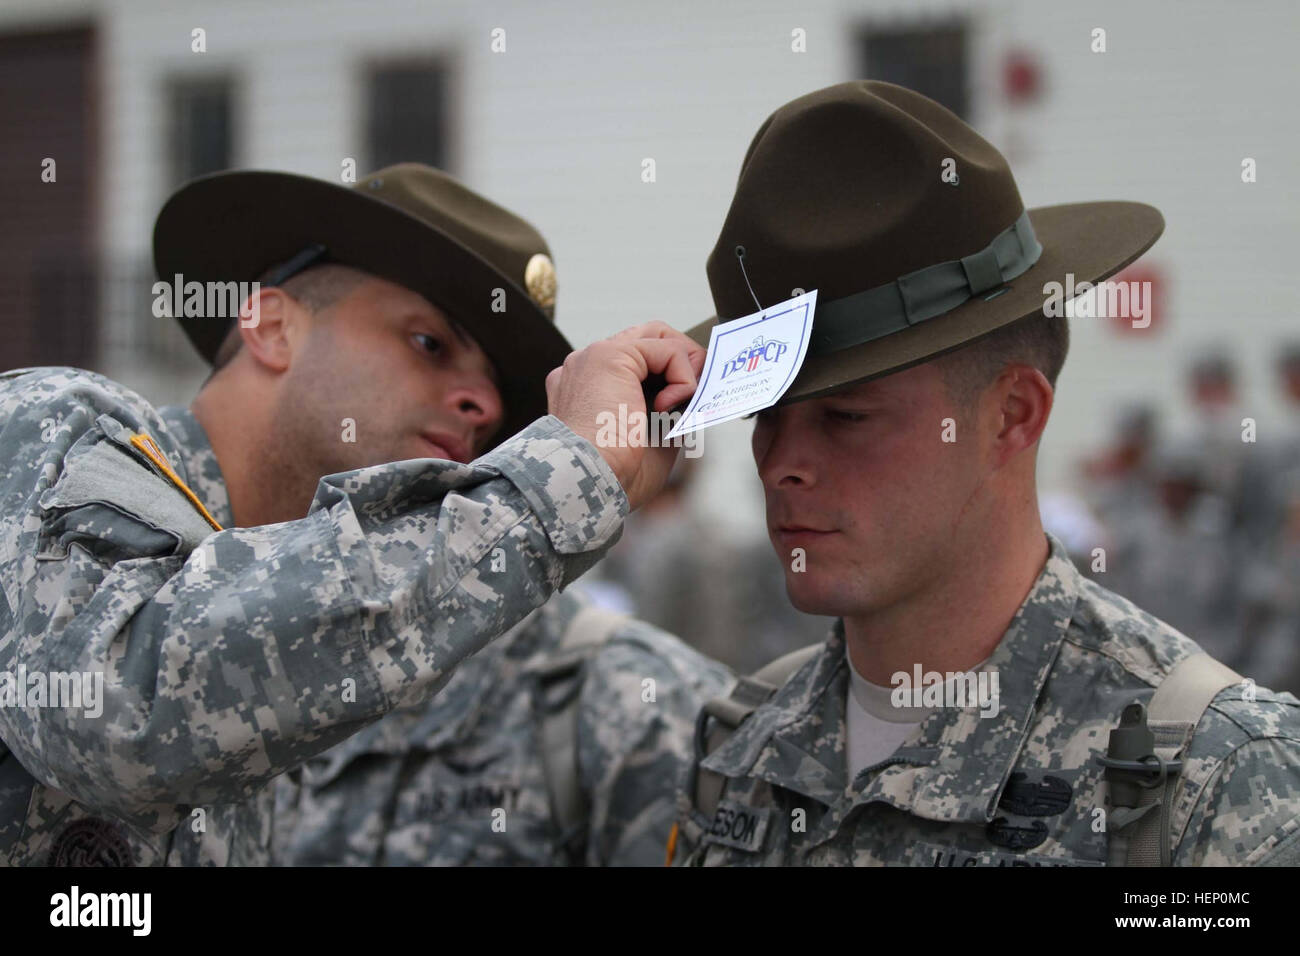 Les candidats sergent au United States Army sergent instructeur à l'école  sont équipés et publié leurs chapeaux, quelques jours avant d'être diplômé  de la prestigieuse course. Le vert olive, coiffures portées par